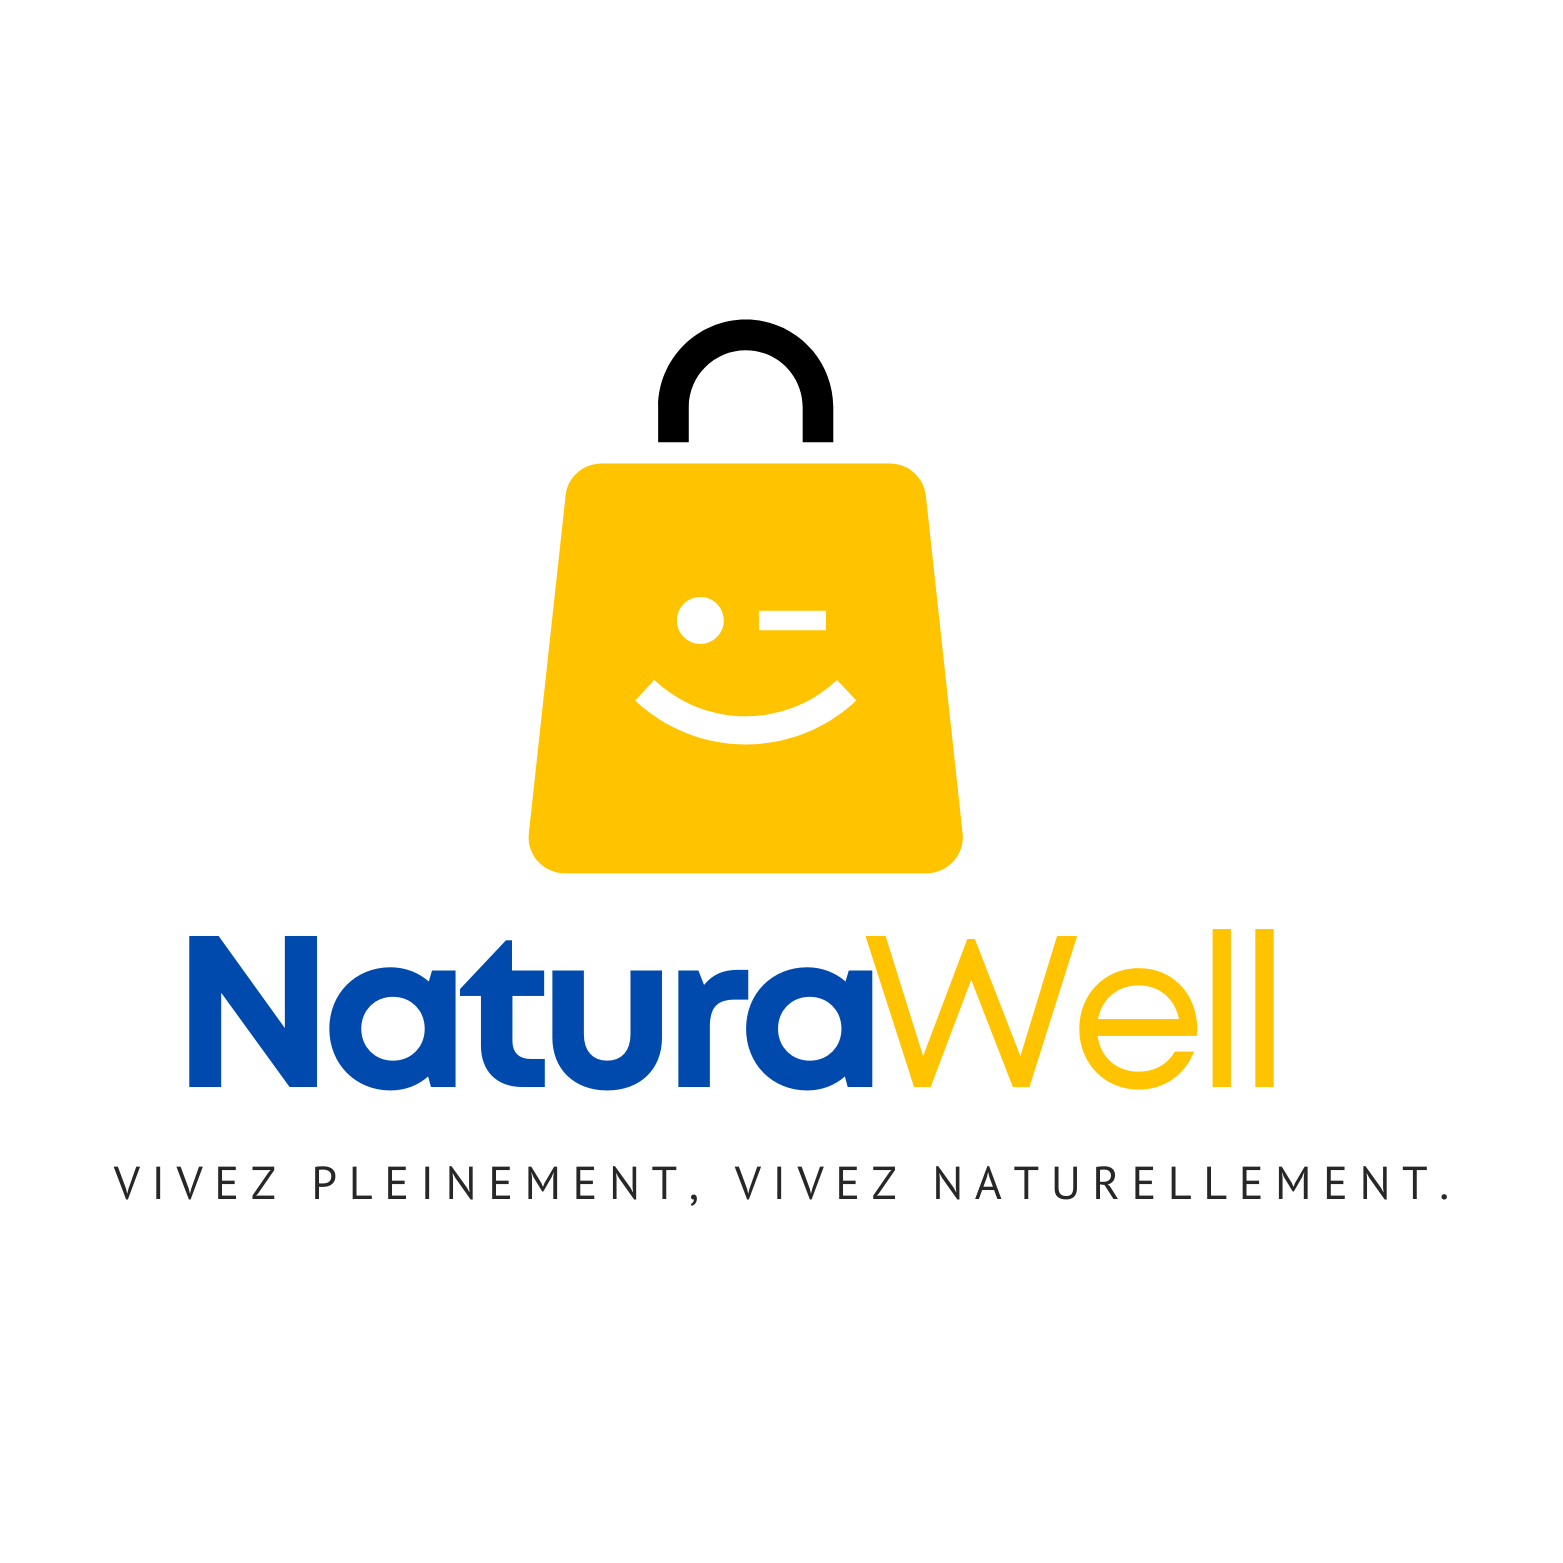 NaturaWell logo